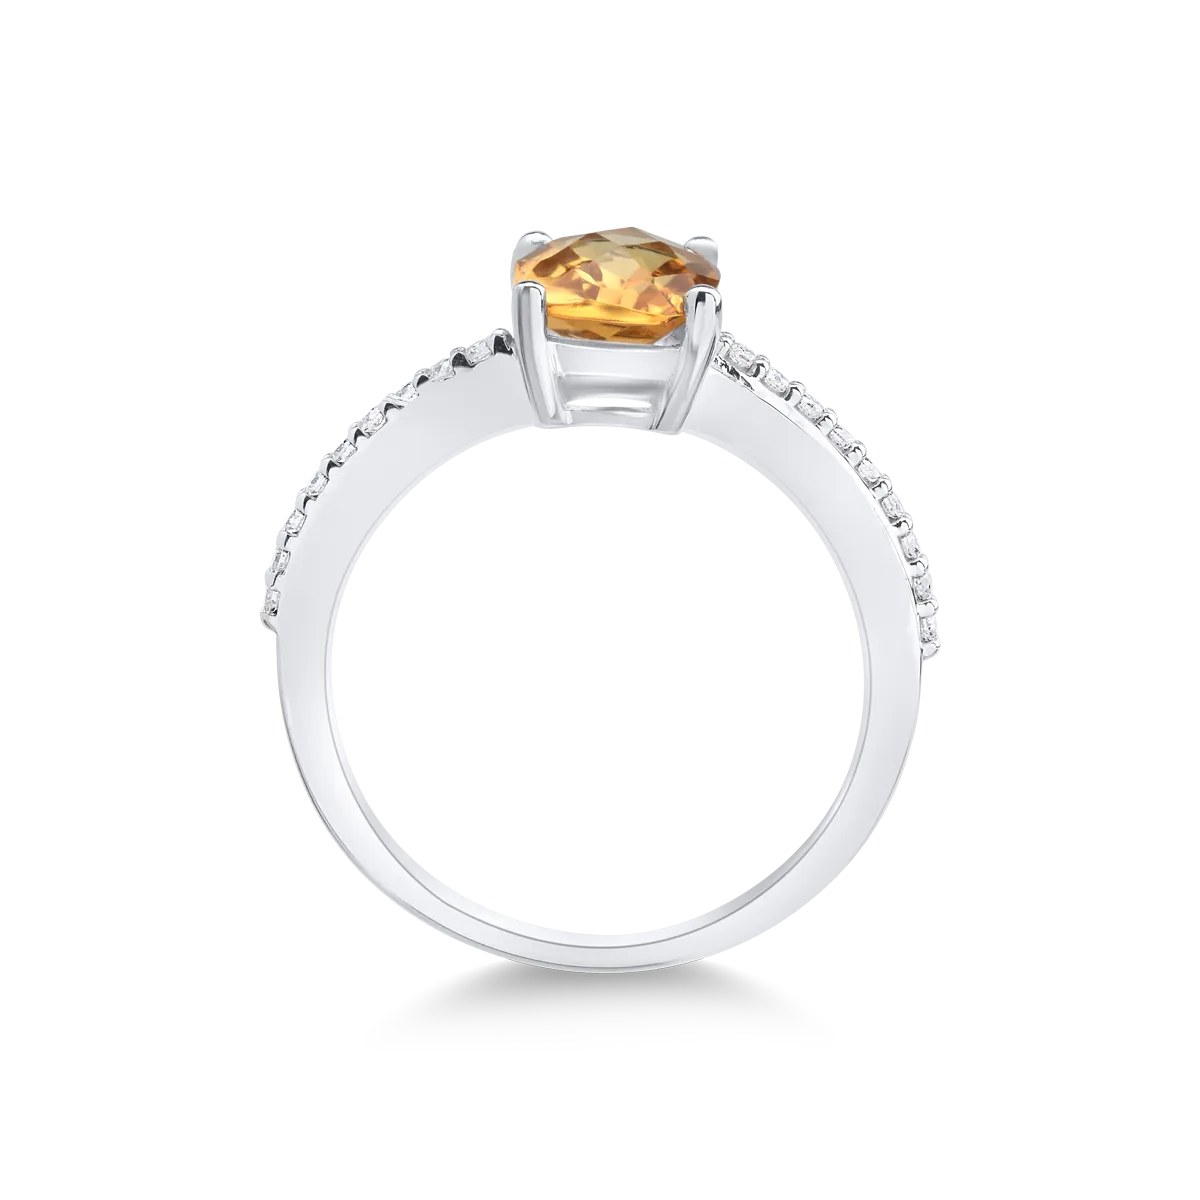 Inel din aur alb de 14K cu citrin de 1.188ct si diamante de 0.095ct